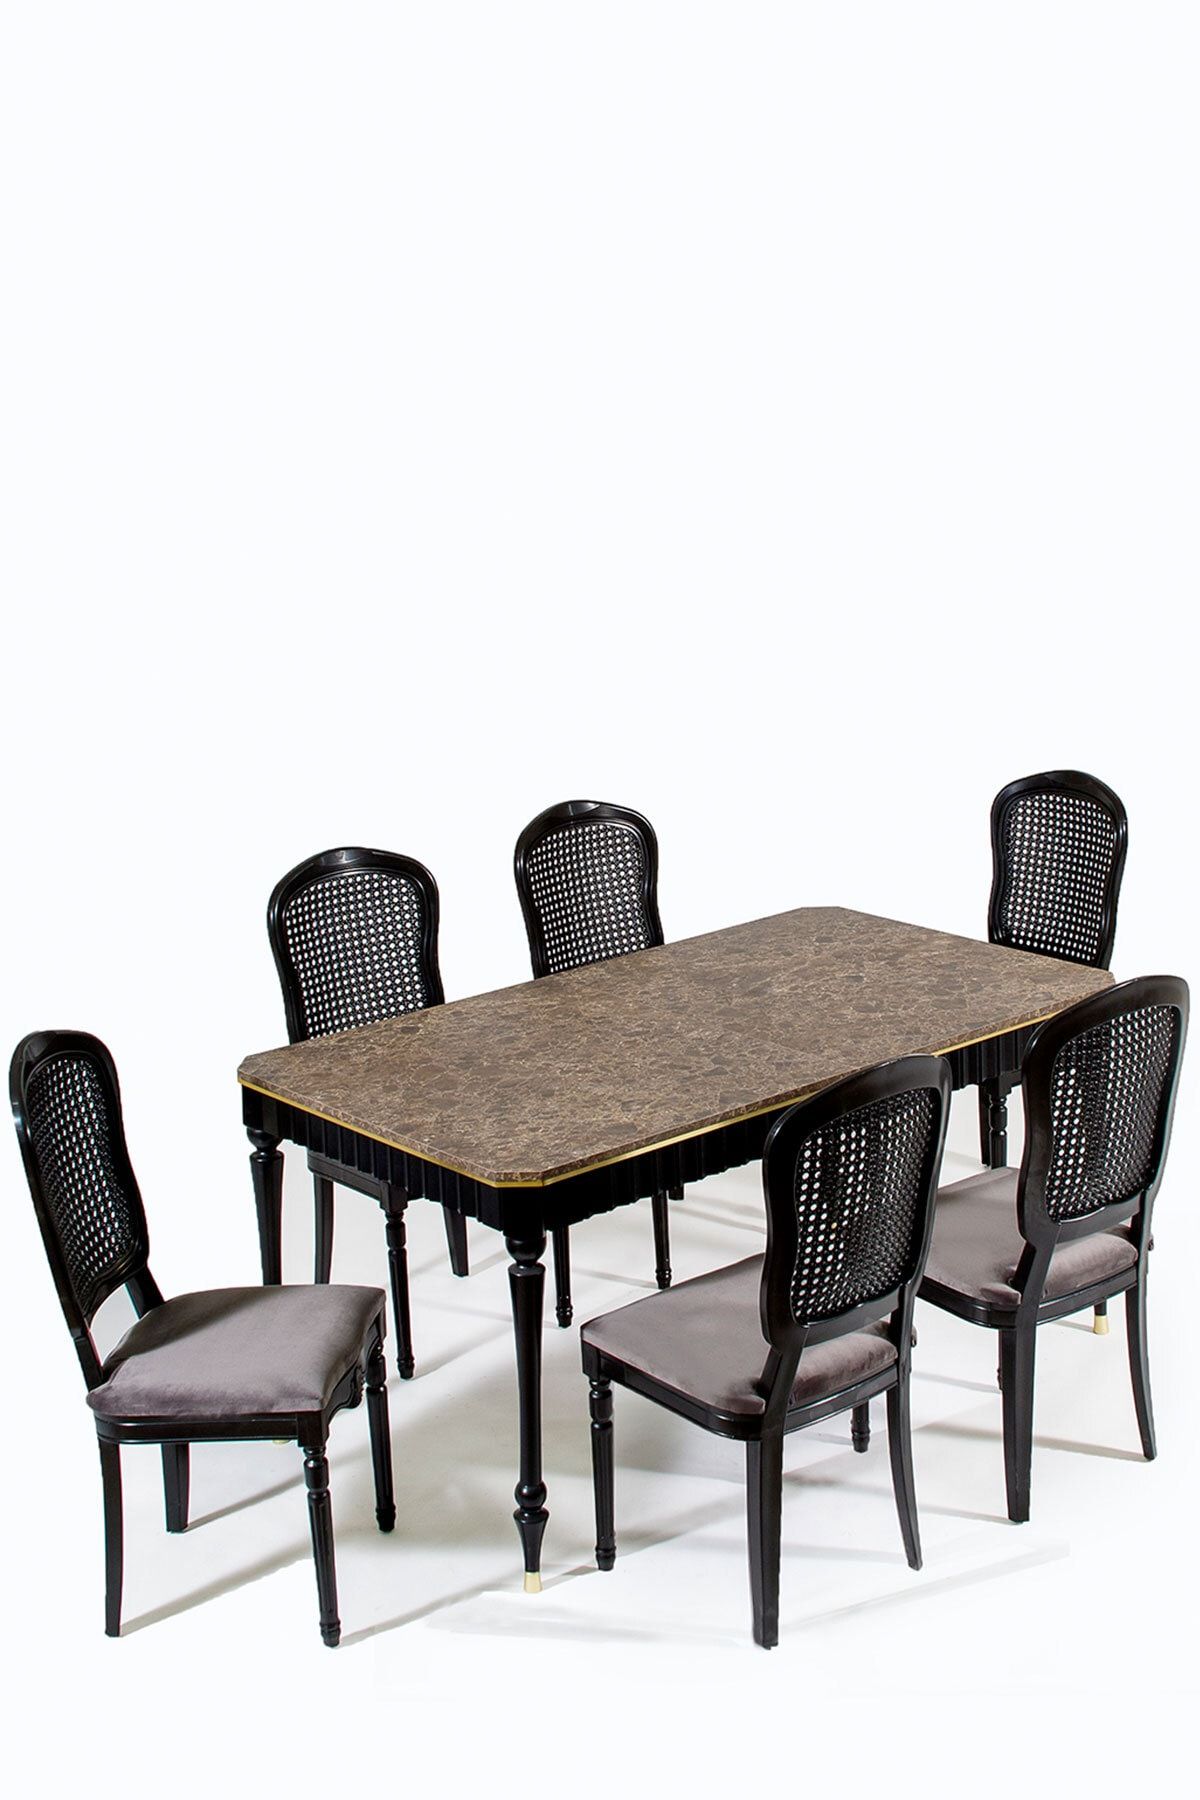 Modalife Urla 6 Sandalye 1 Ortadan Açılır Masa Yemek Masası Takımı 6 Kişilik - Siyah/ceviz